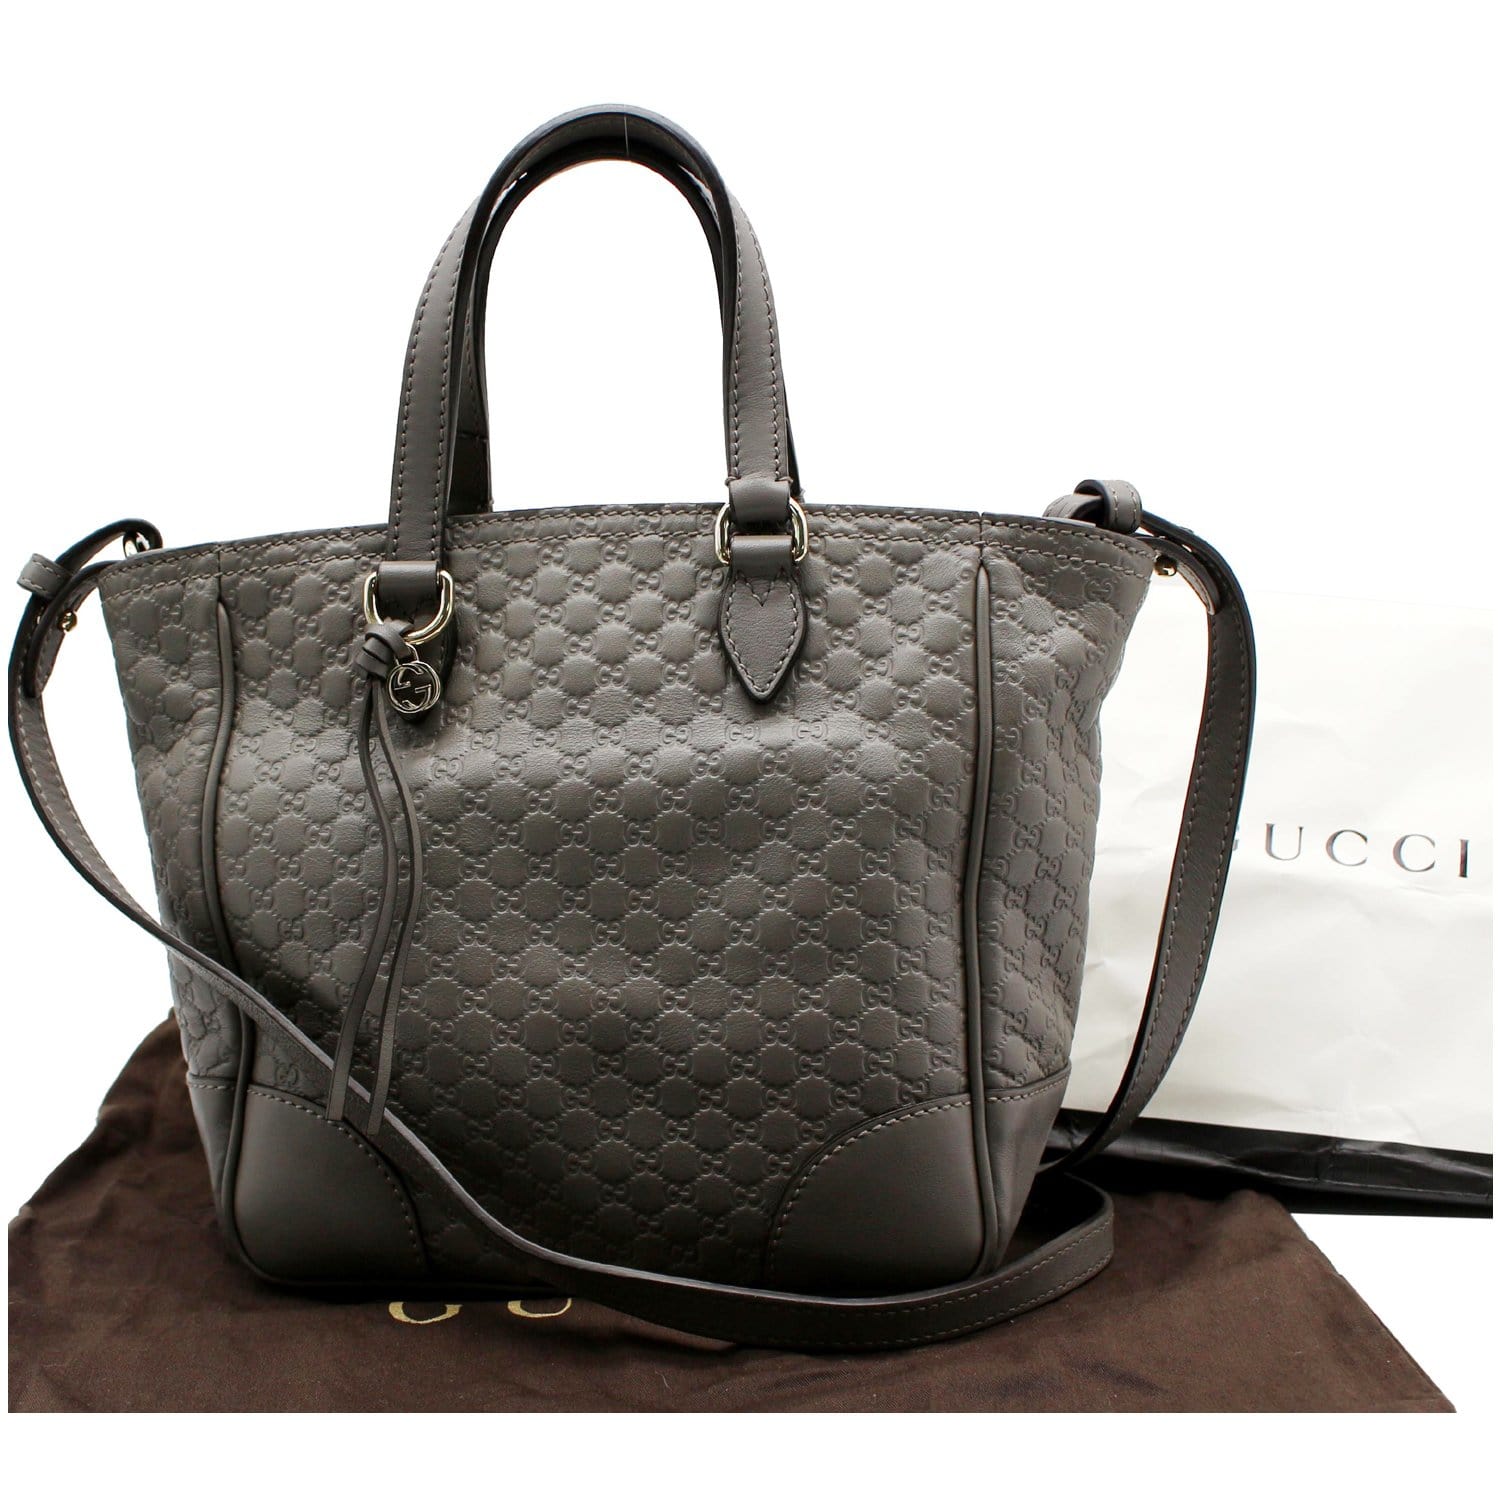 Gucci guccissima alma bag in black (smaller size)